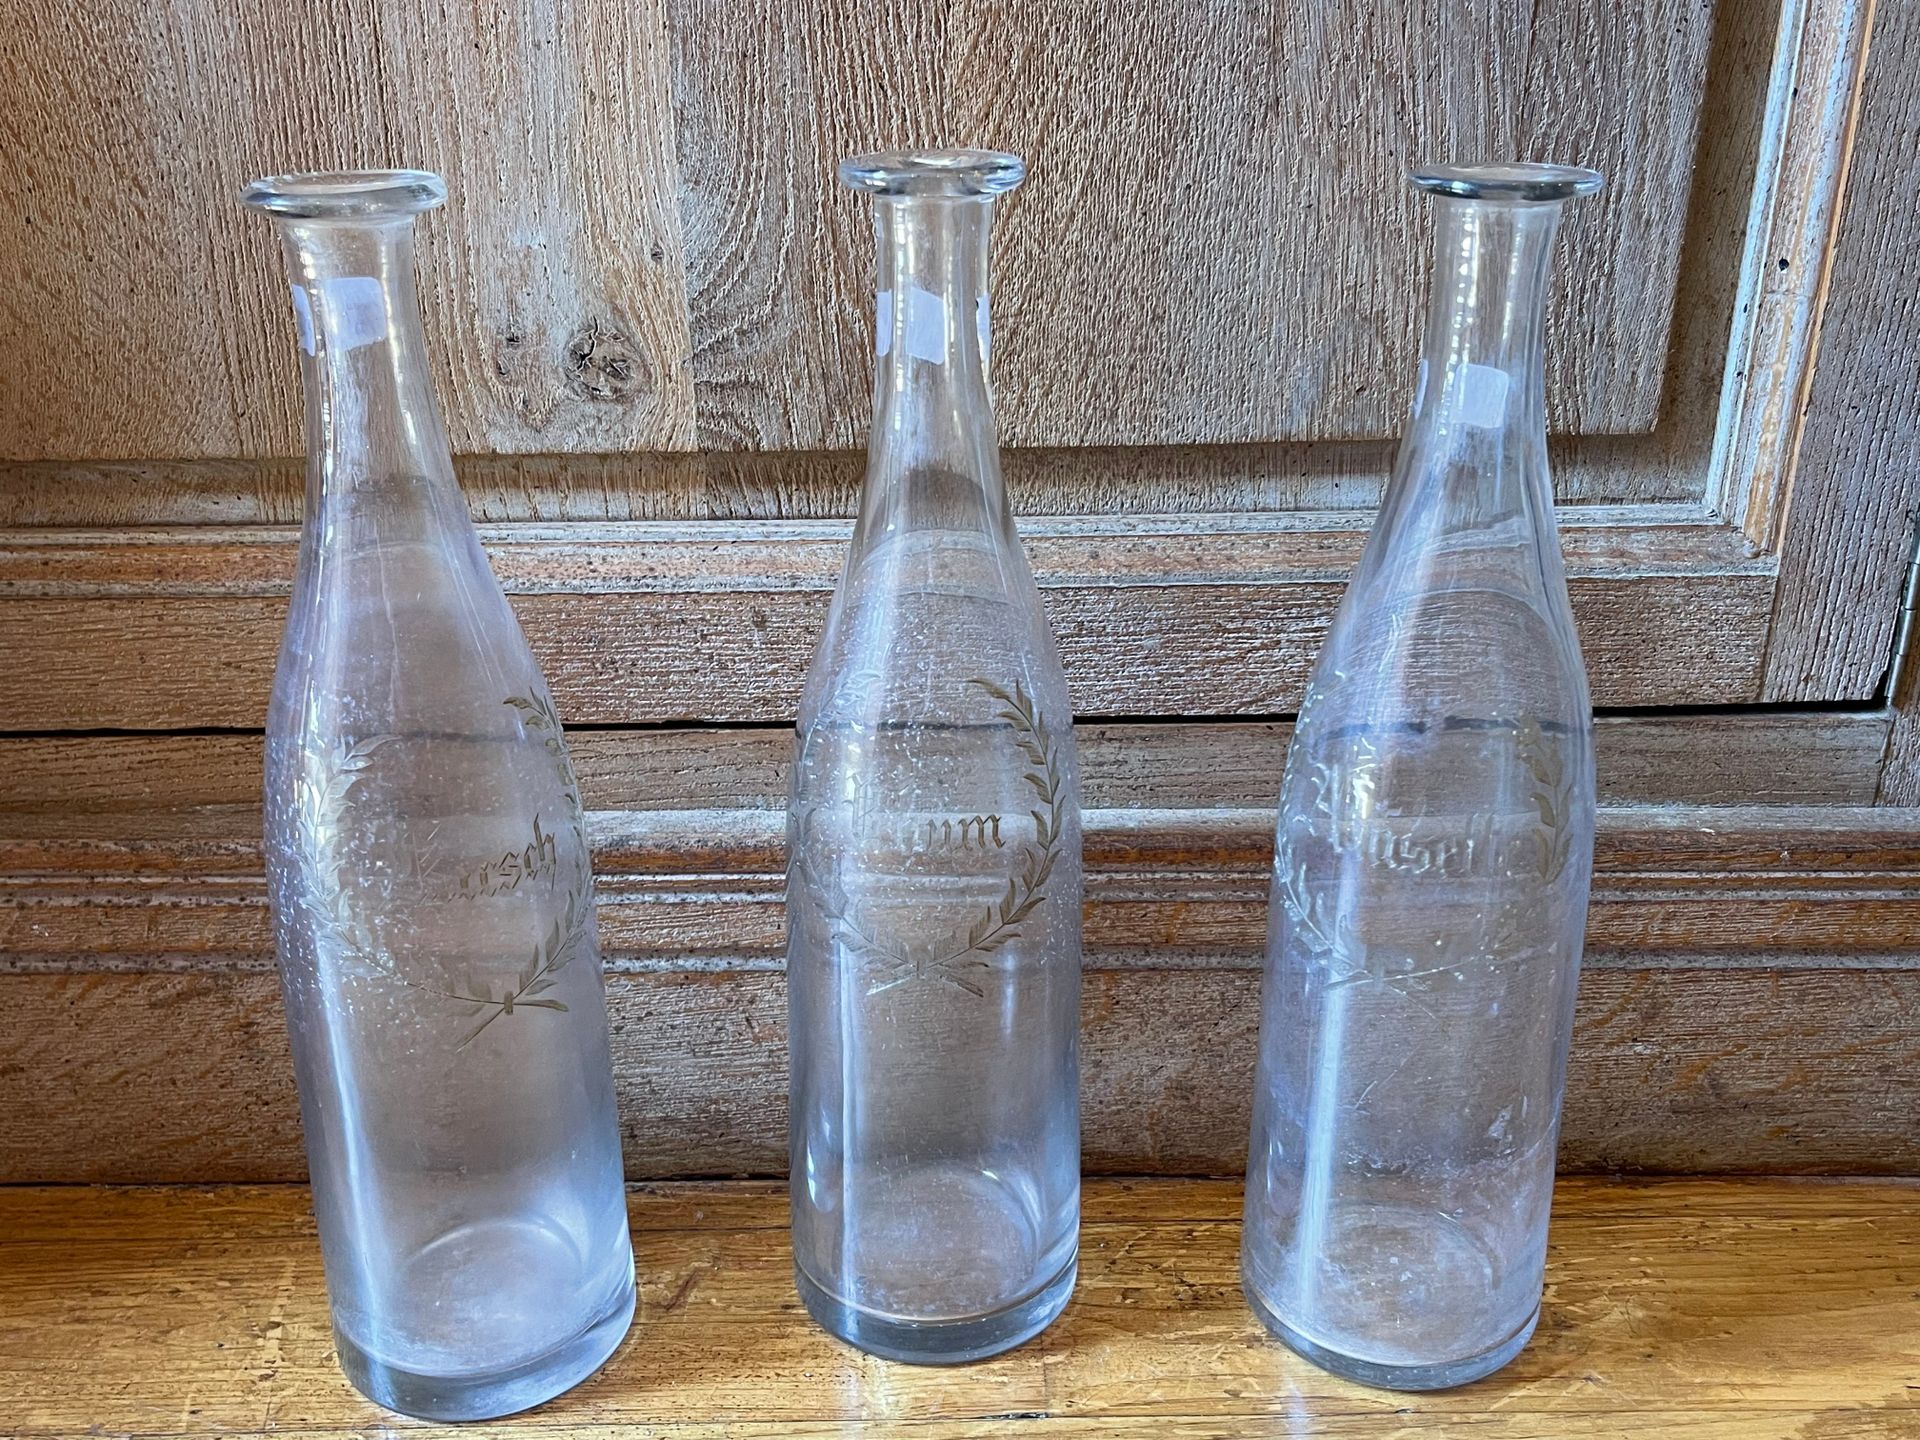 Null Drei Glasflaschen mit Gravur "Rum, Anisette, Kirsh".